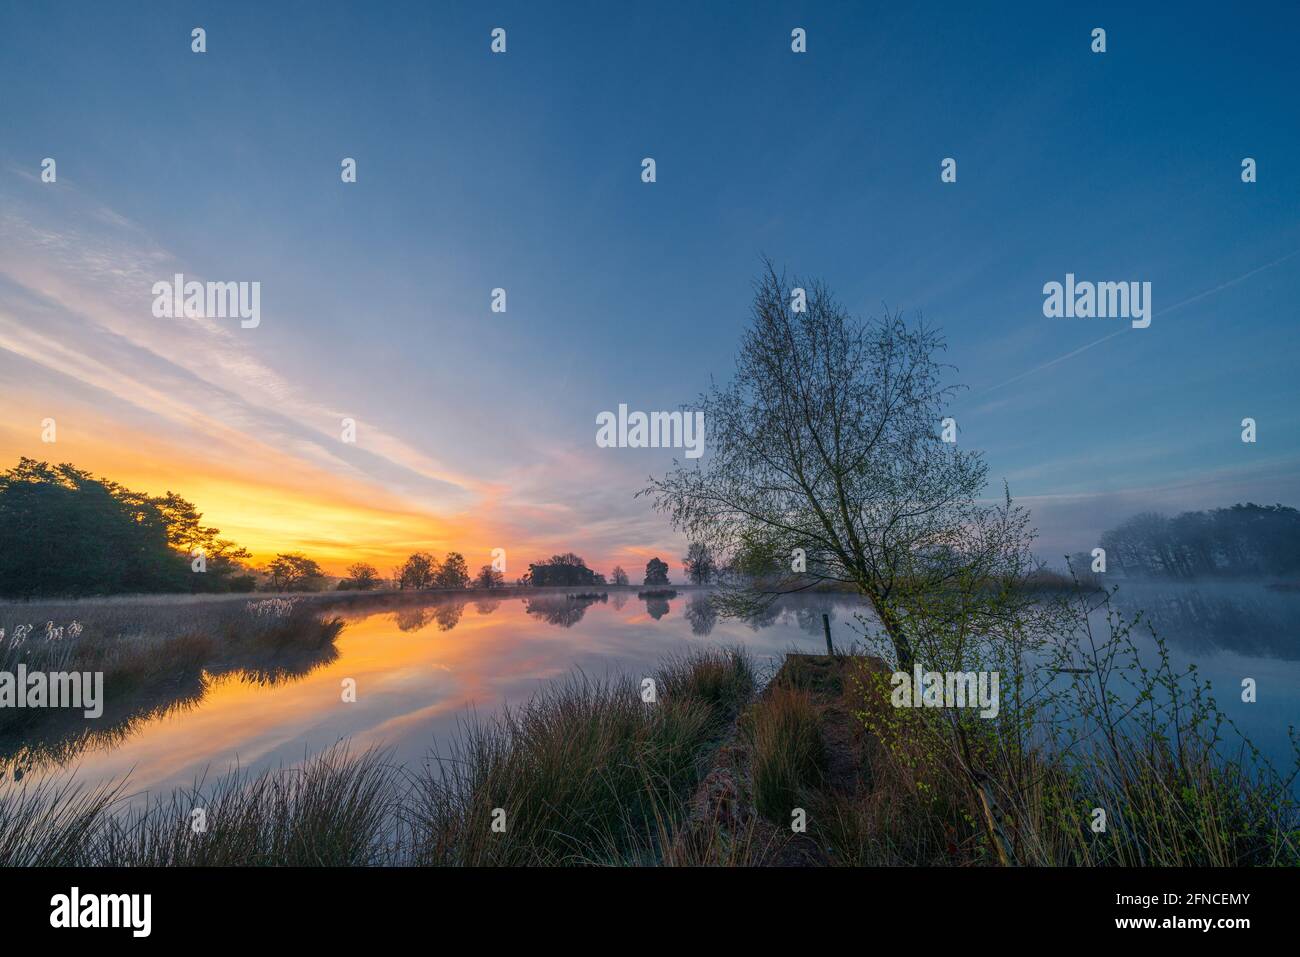 In un lago di brughiera sul Dwingelderveld in provincia di Drenthe nei Paesi Bassi, l'alba colora il cielo. Dwingeloo, Drenthe, Paesi Bassi Foto Stock